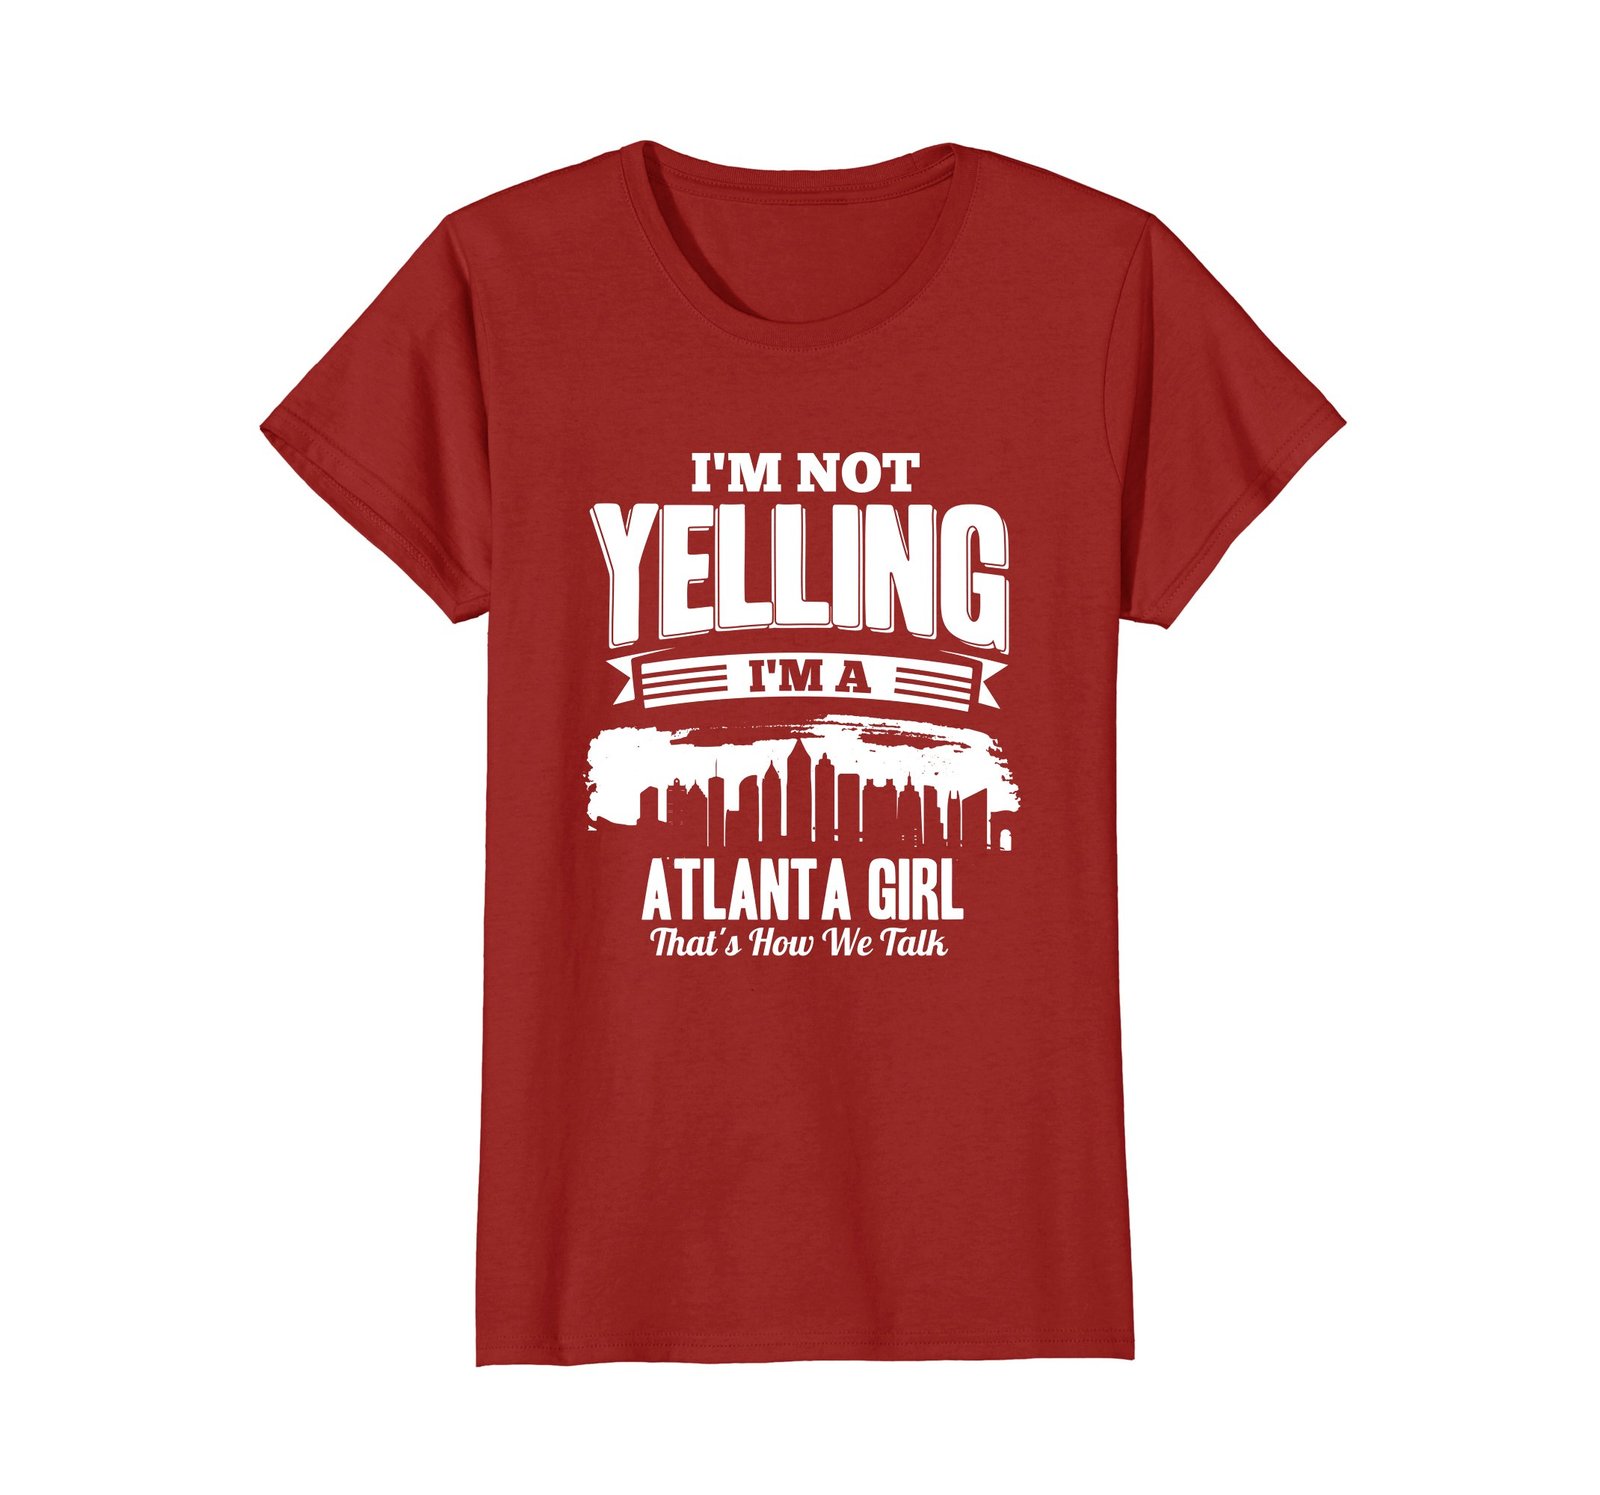 Funny Shirts - I'M NOT YELLING I'M An Atlanta GIRL T-shirt Wowen